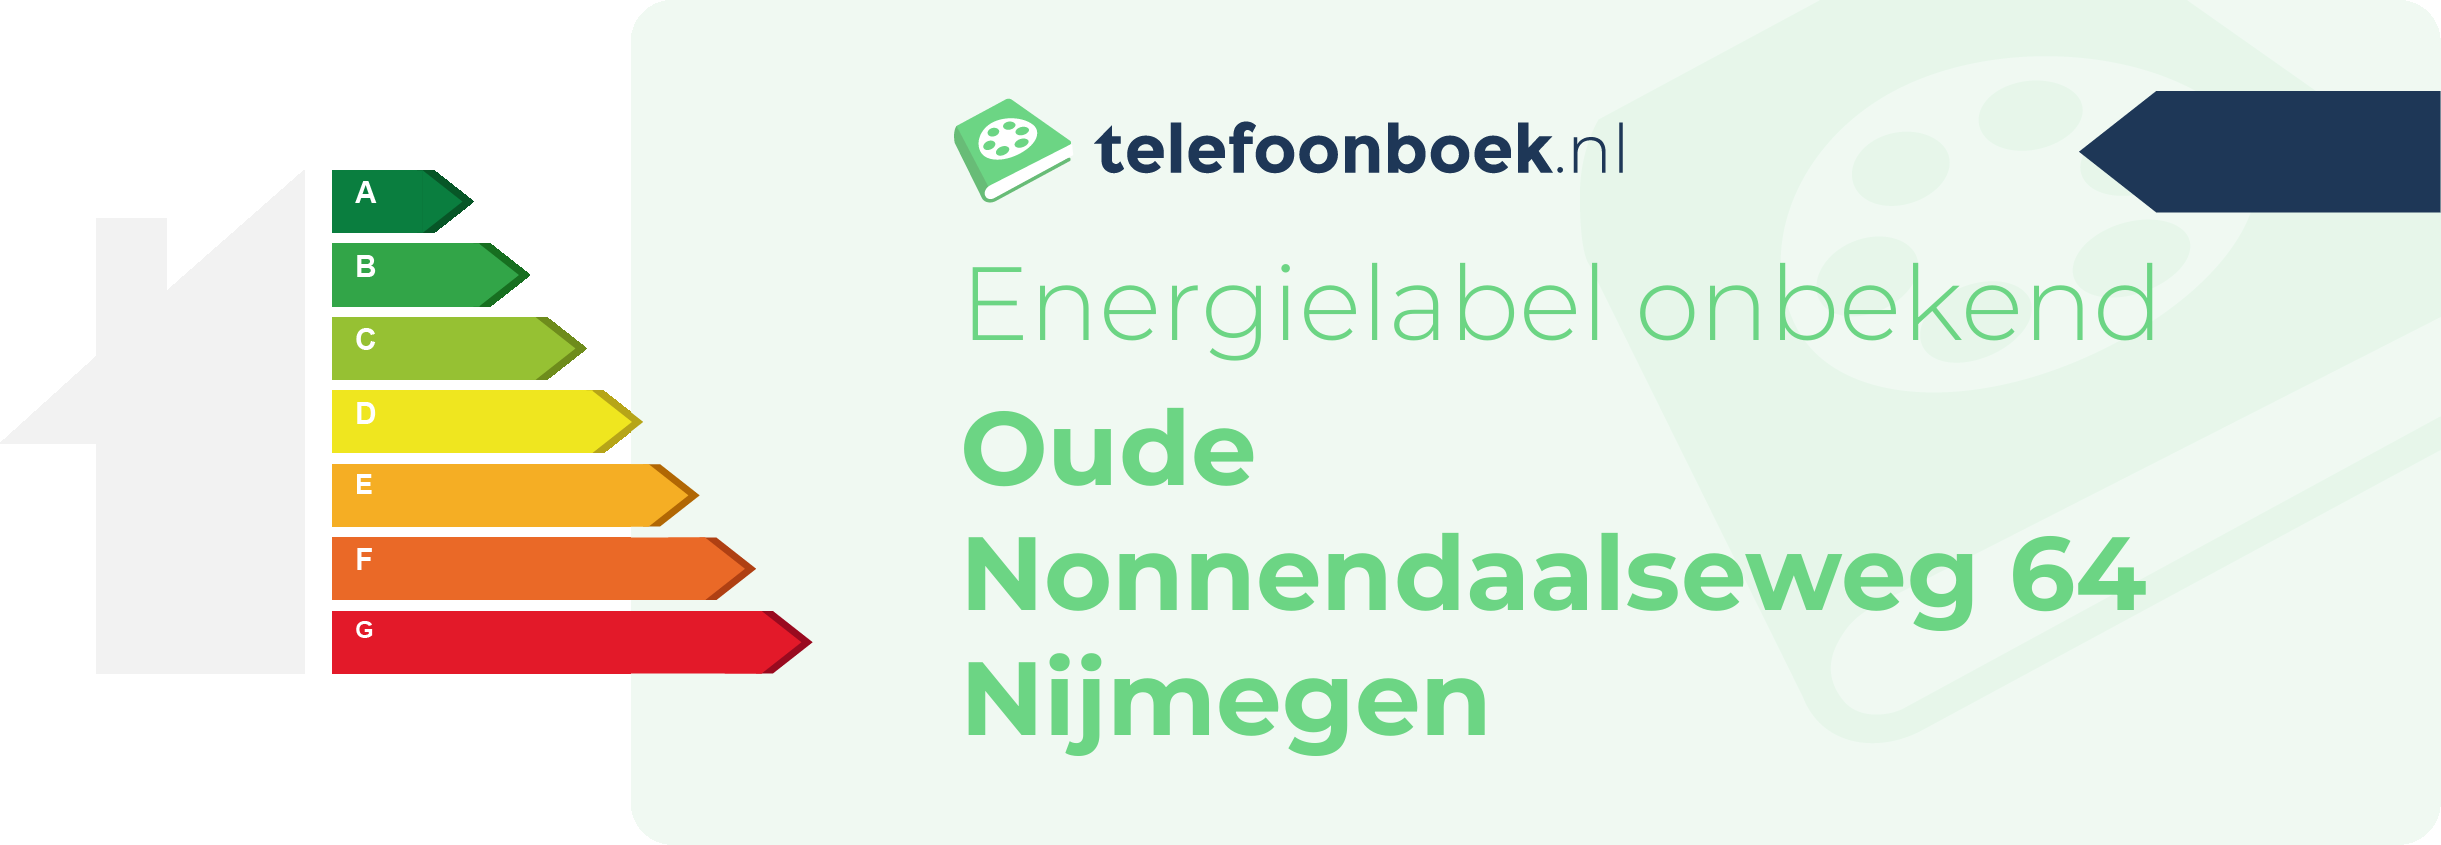 Energielabel Oude Nonnendaalseweg 64 Nijmegen